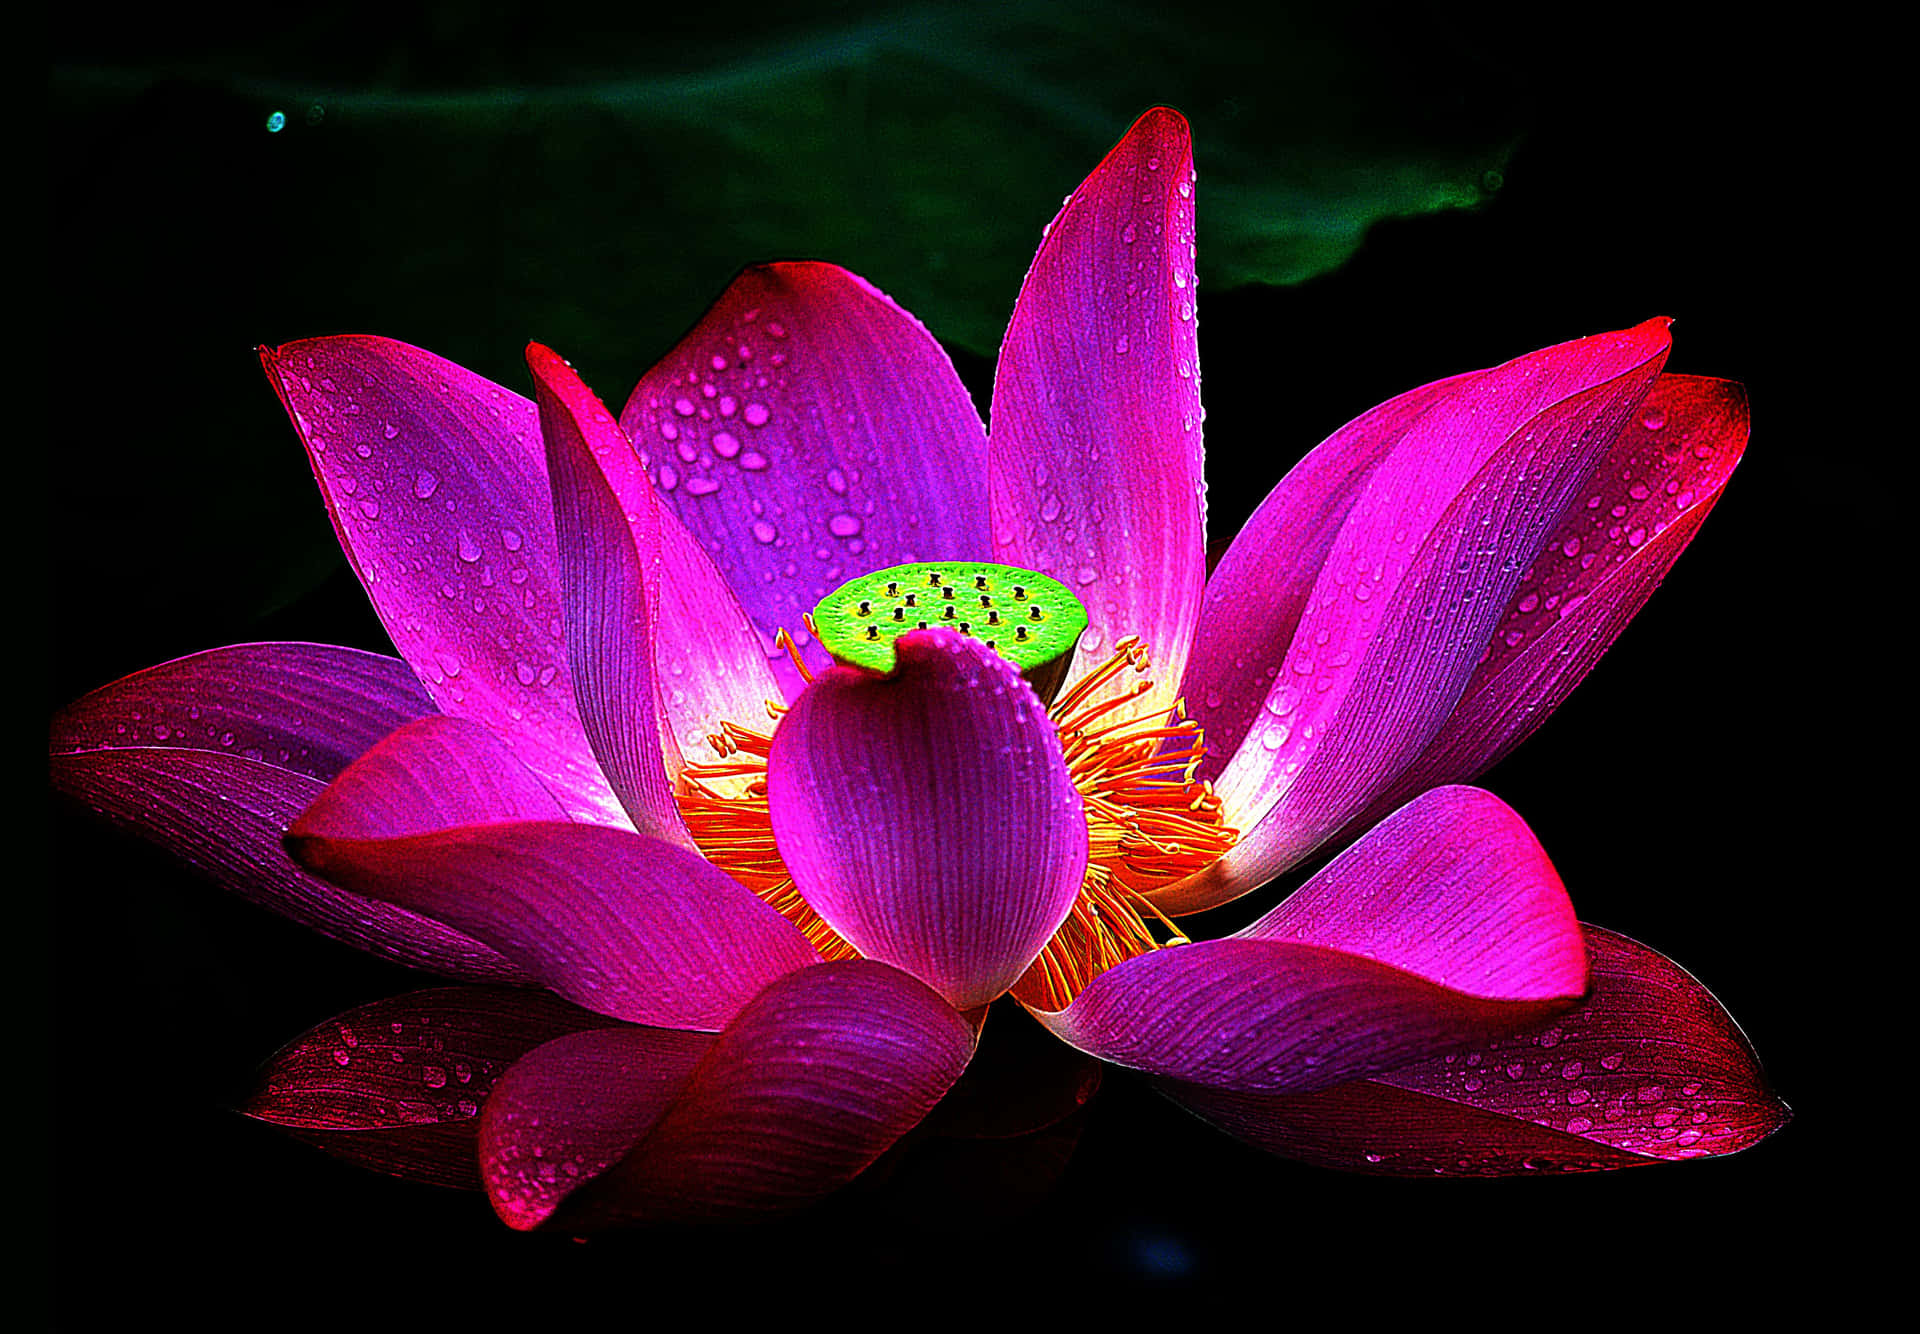 Etfredfyldt Billede Af En Lyserød Lotusblomst I Solskinnet